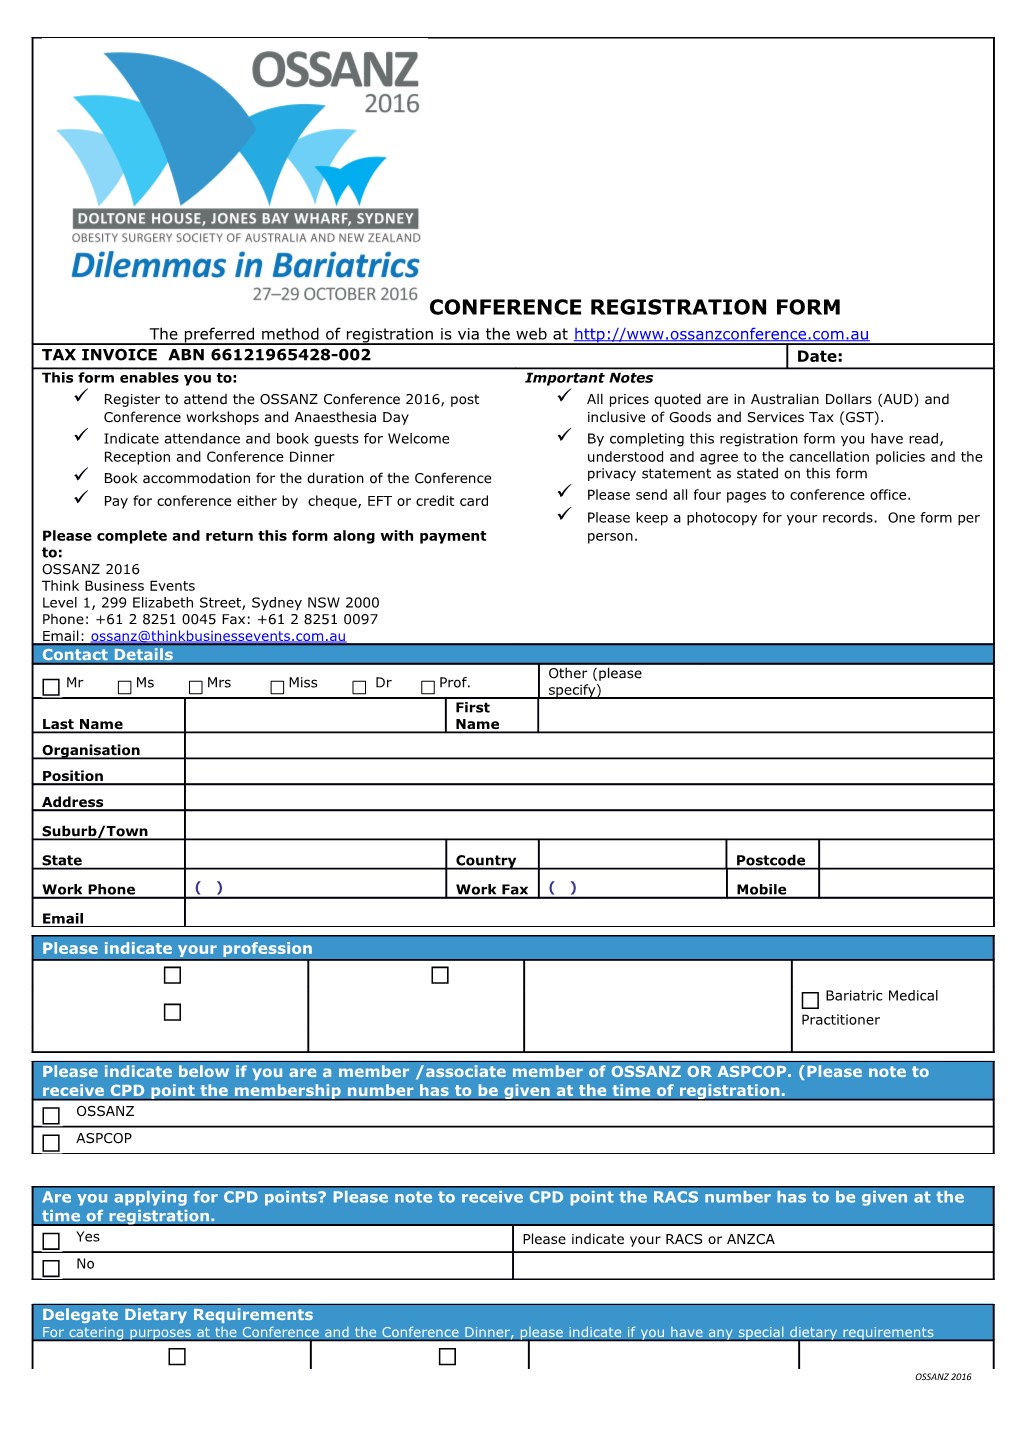 Conference Registration Form s4